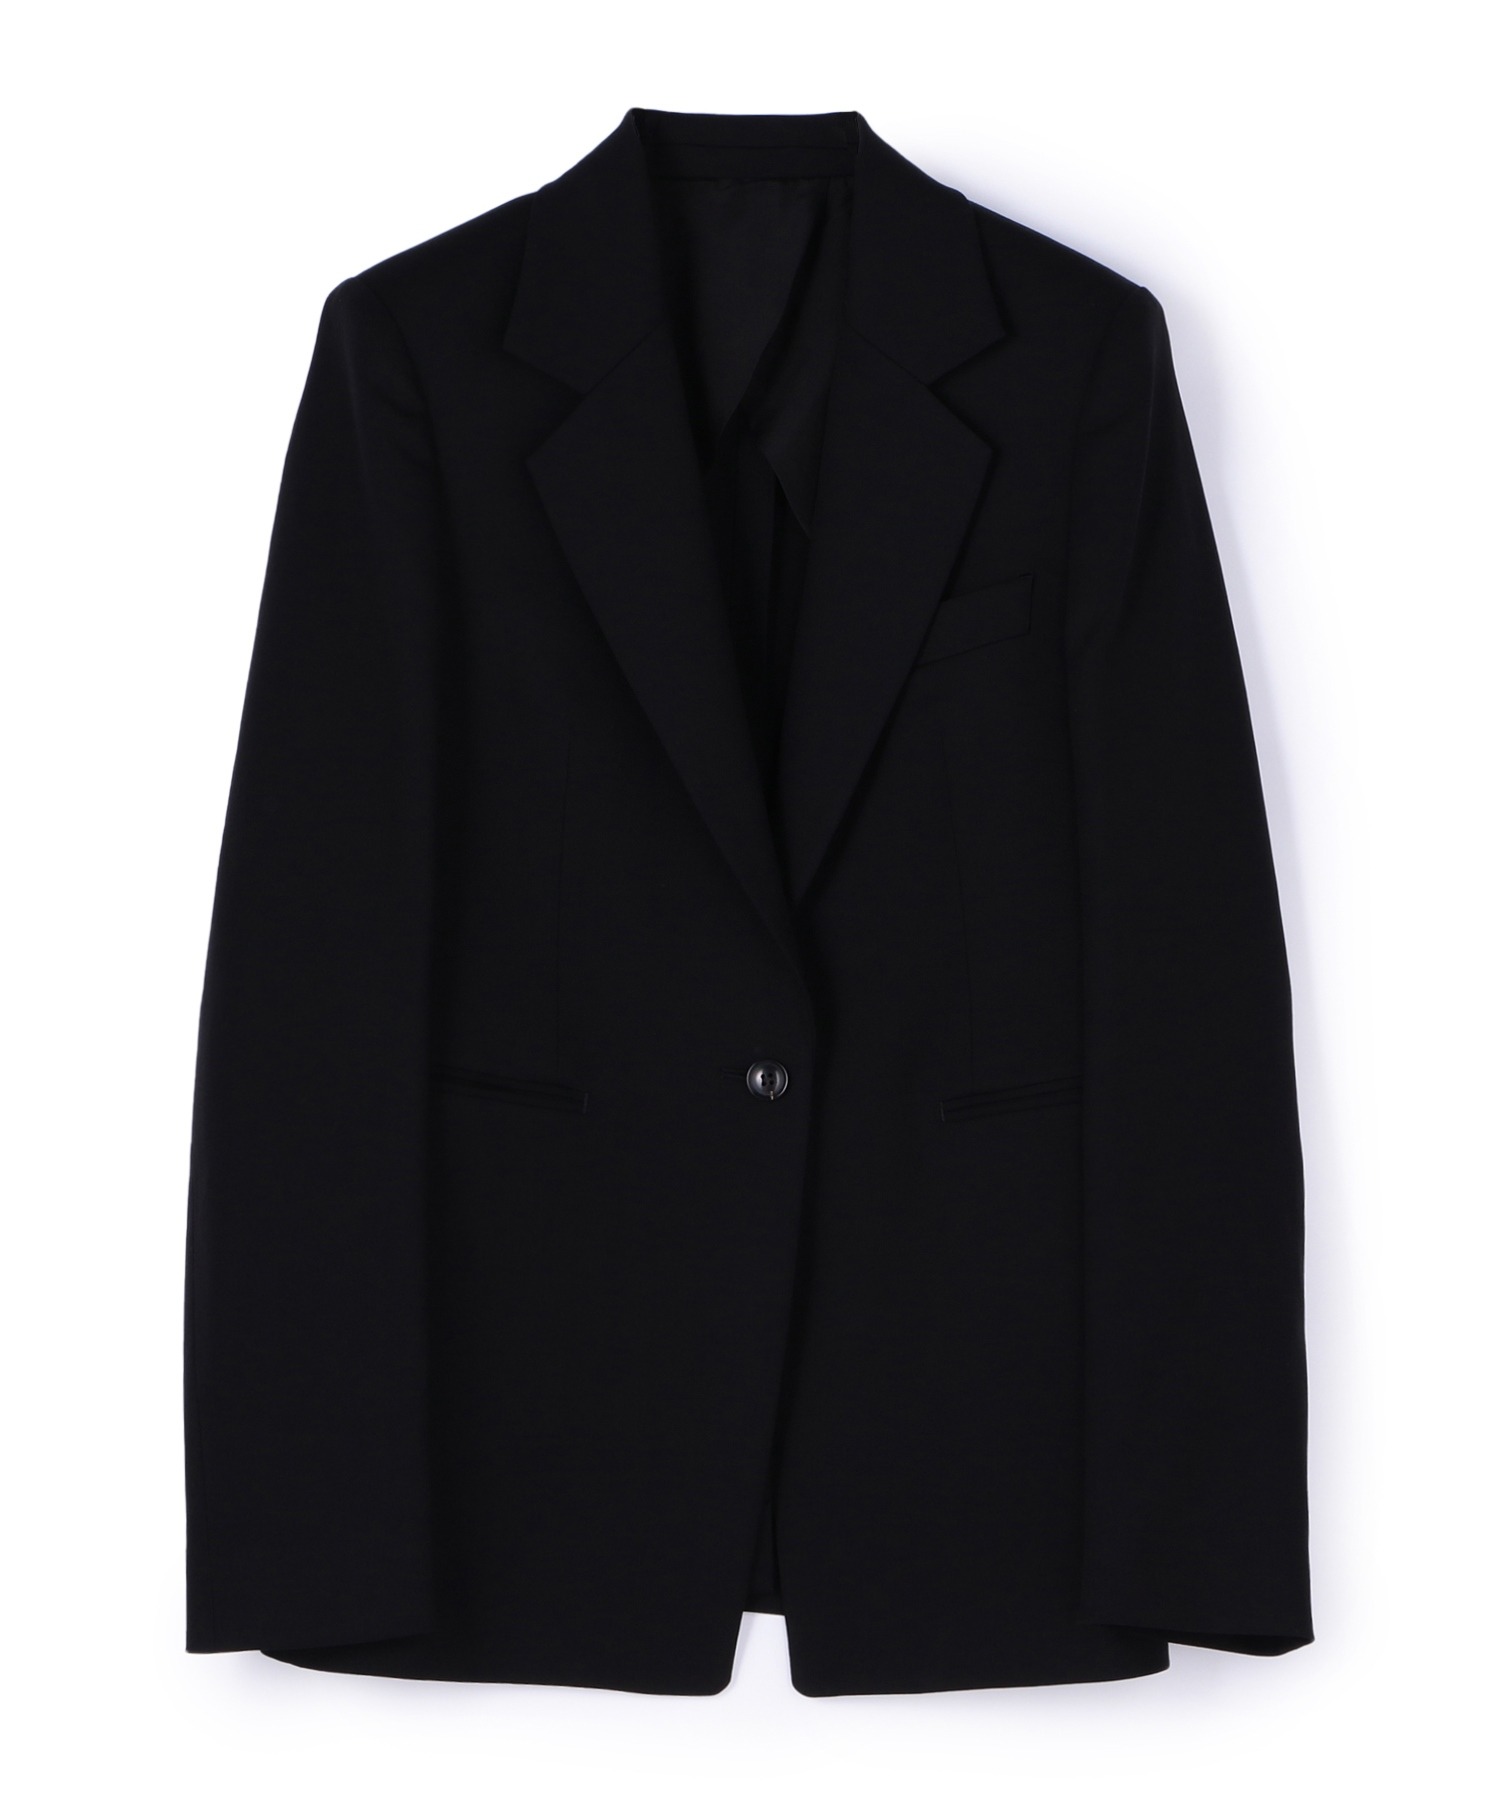 エストネーション／ESTNATION テーラードジャケット ブレザー JKT アウター メンズ 男性 男性用レザー 革 本革 ブラック 黒  2つボタン シングルブレスト